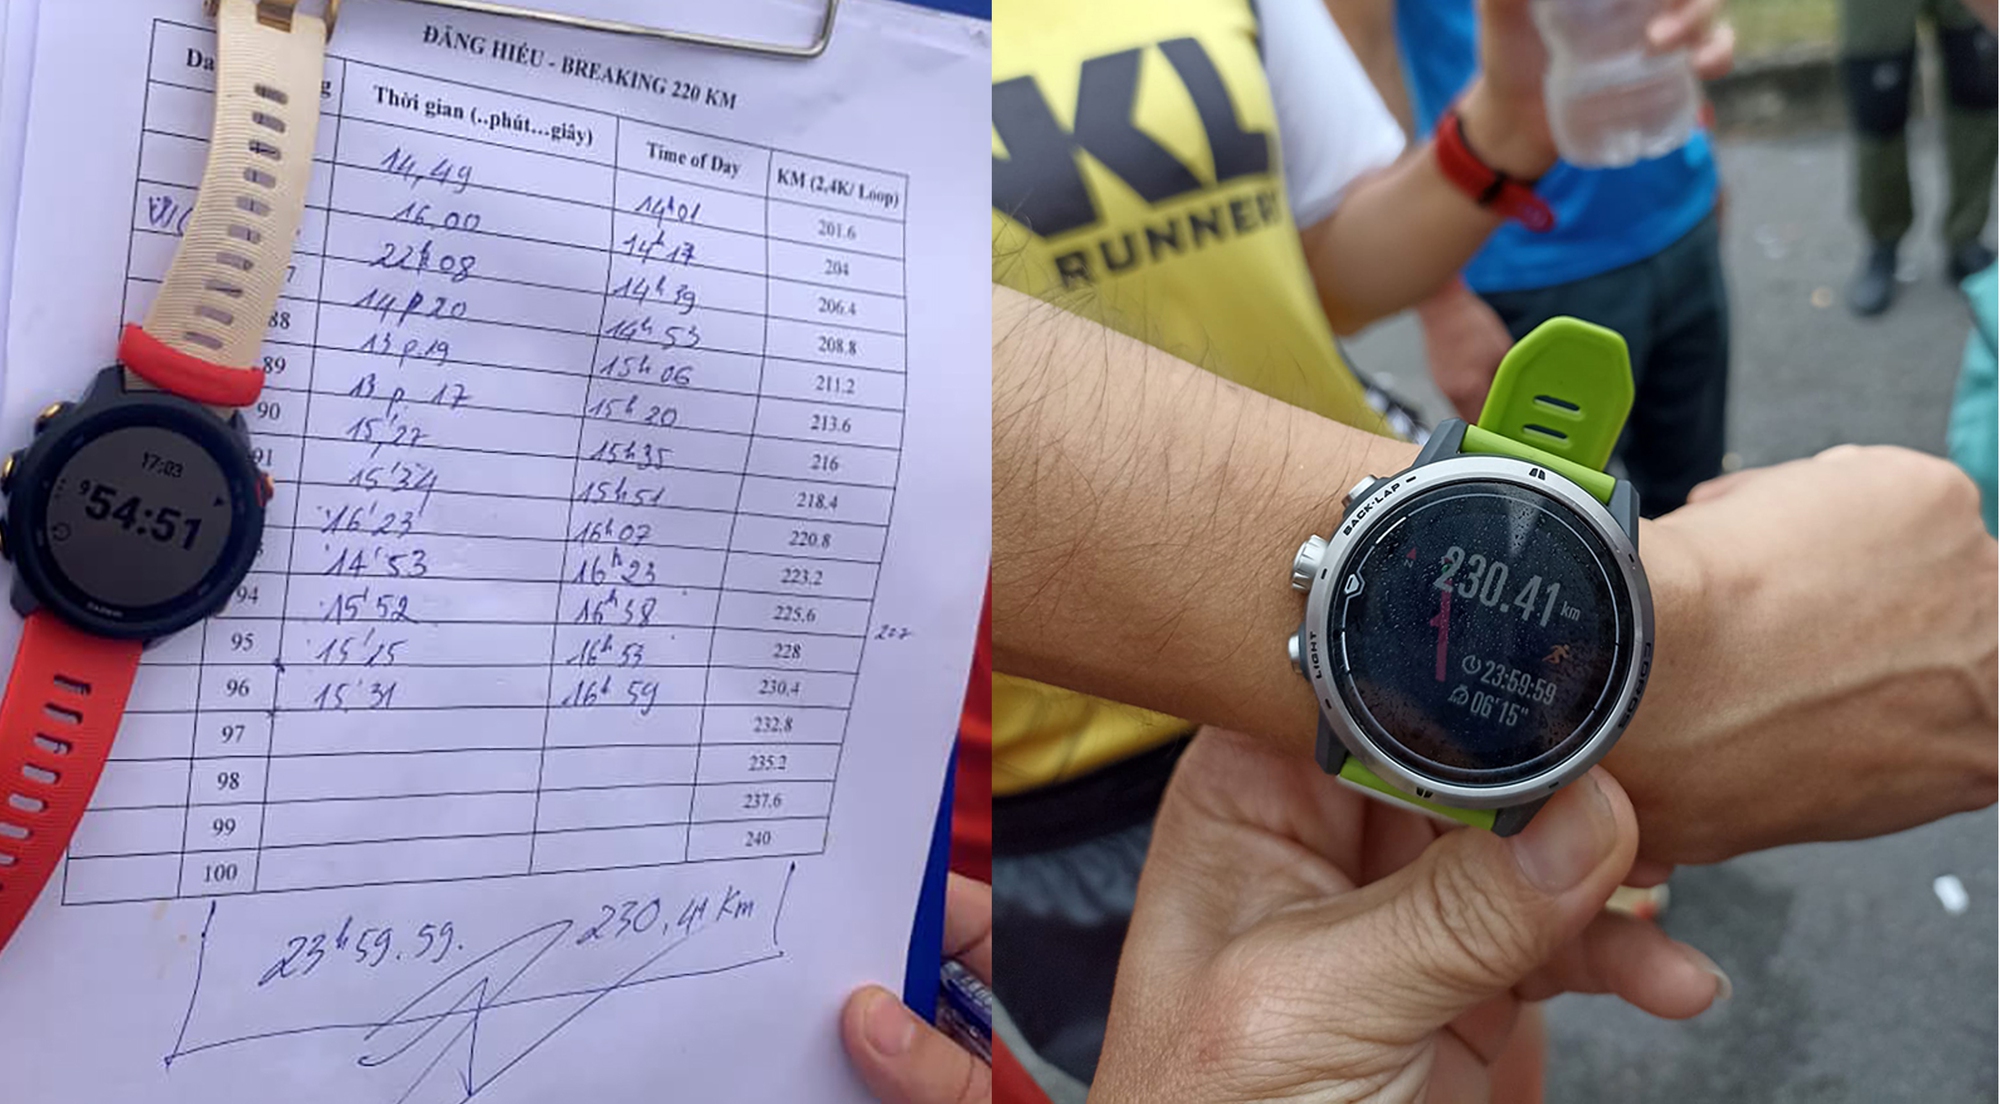 Hành trình thiết lập kỷ lục Đông Nam Á của runner Nguyễn Đăng Hiếu - Ảnh 8.